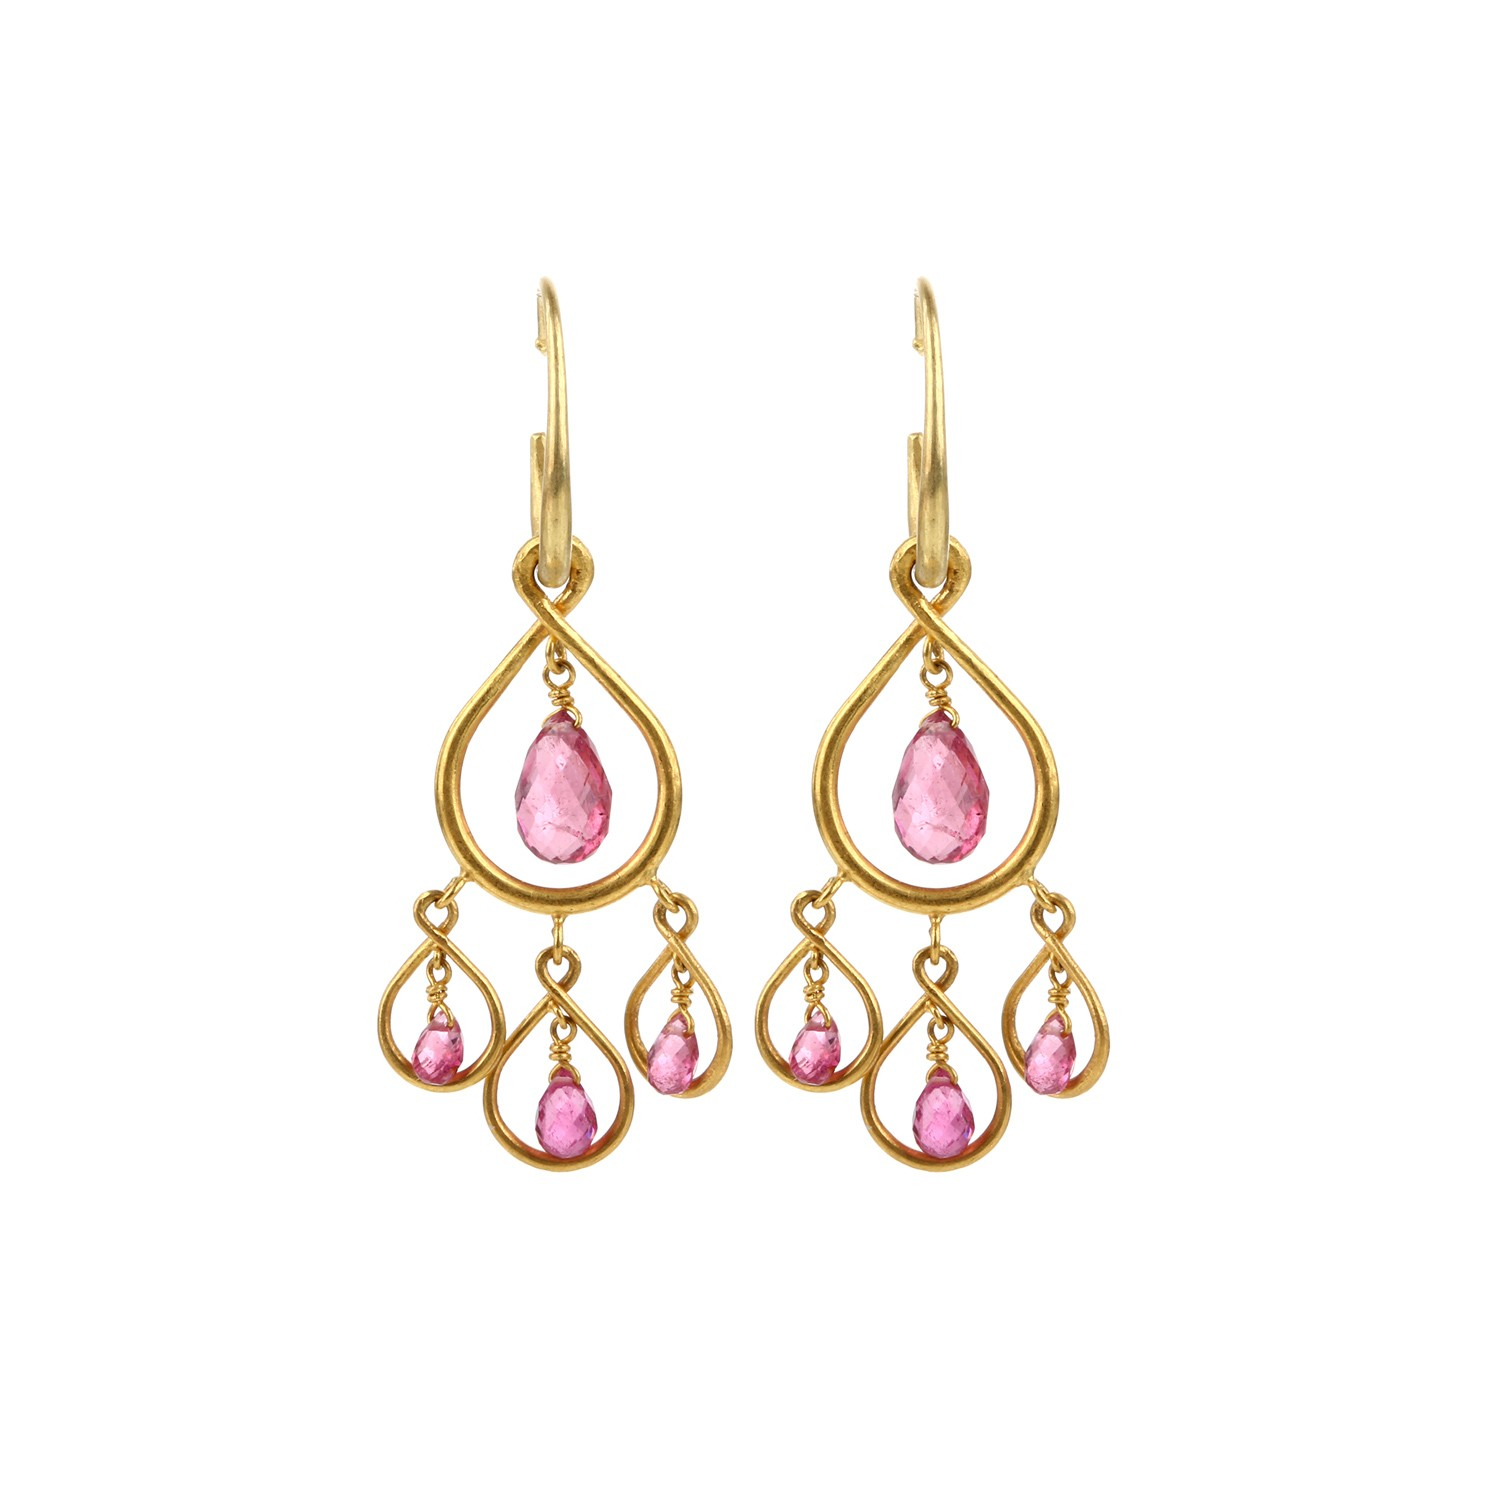 Marie-hélène de taillac Earrings in Pink (multi)